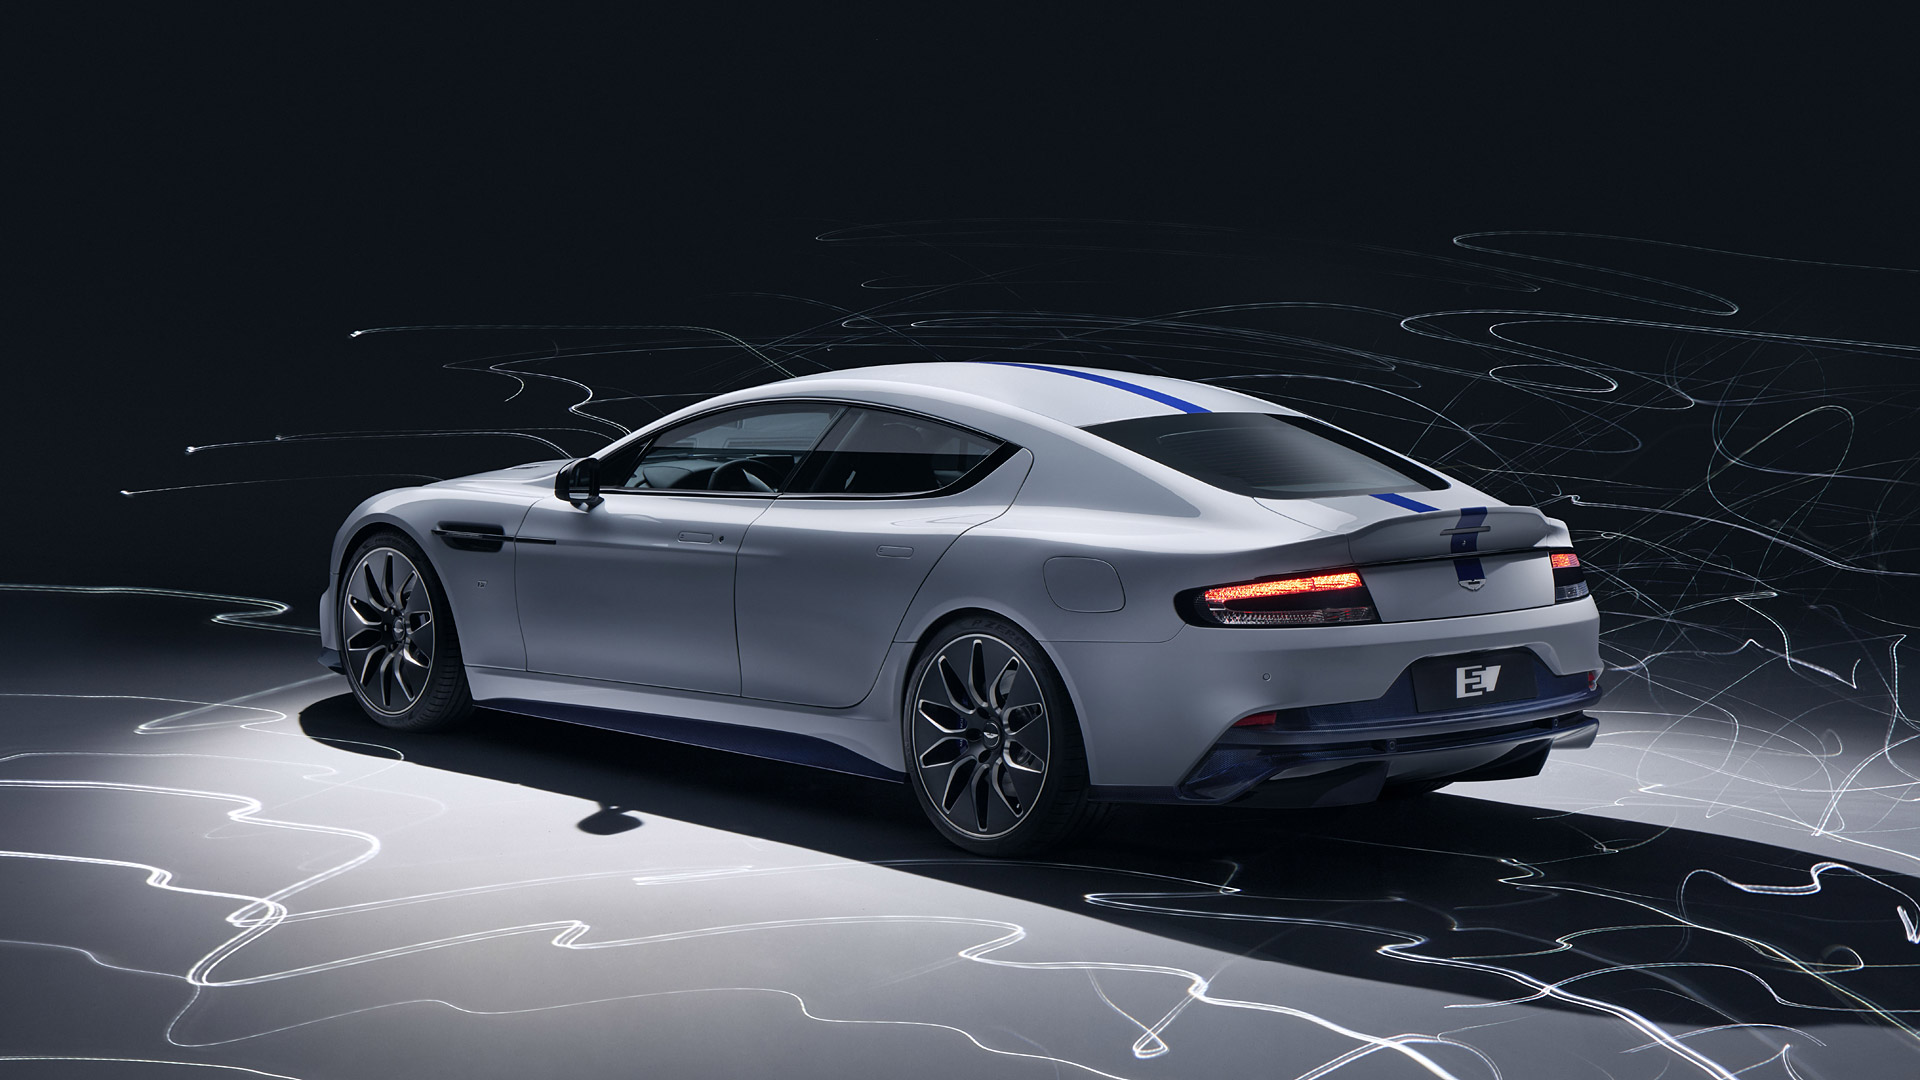  2020 Aston Martin Rapide E Wallpaper.